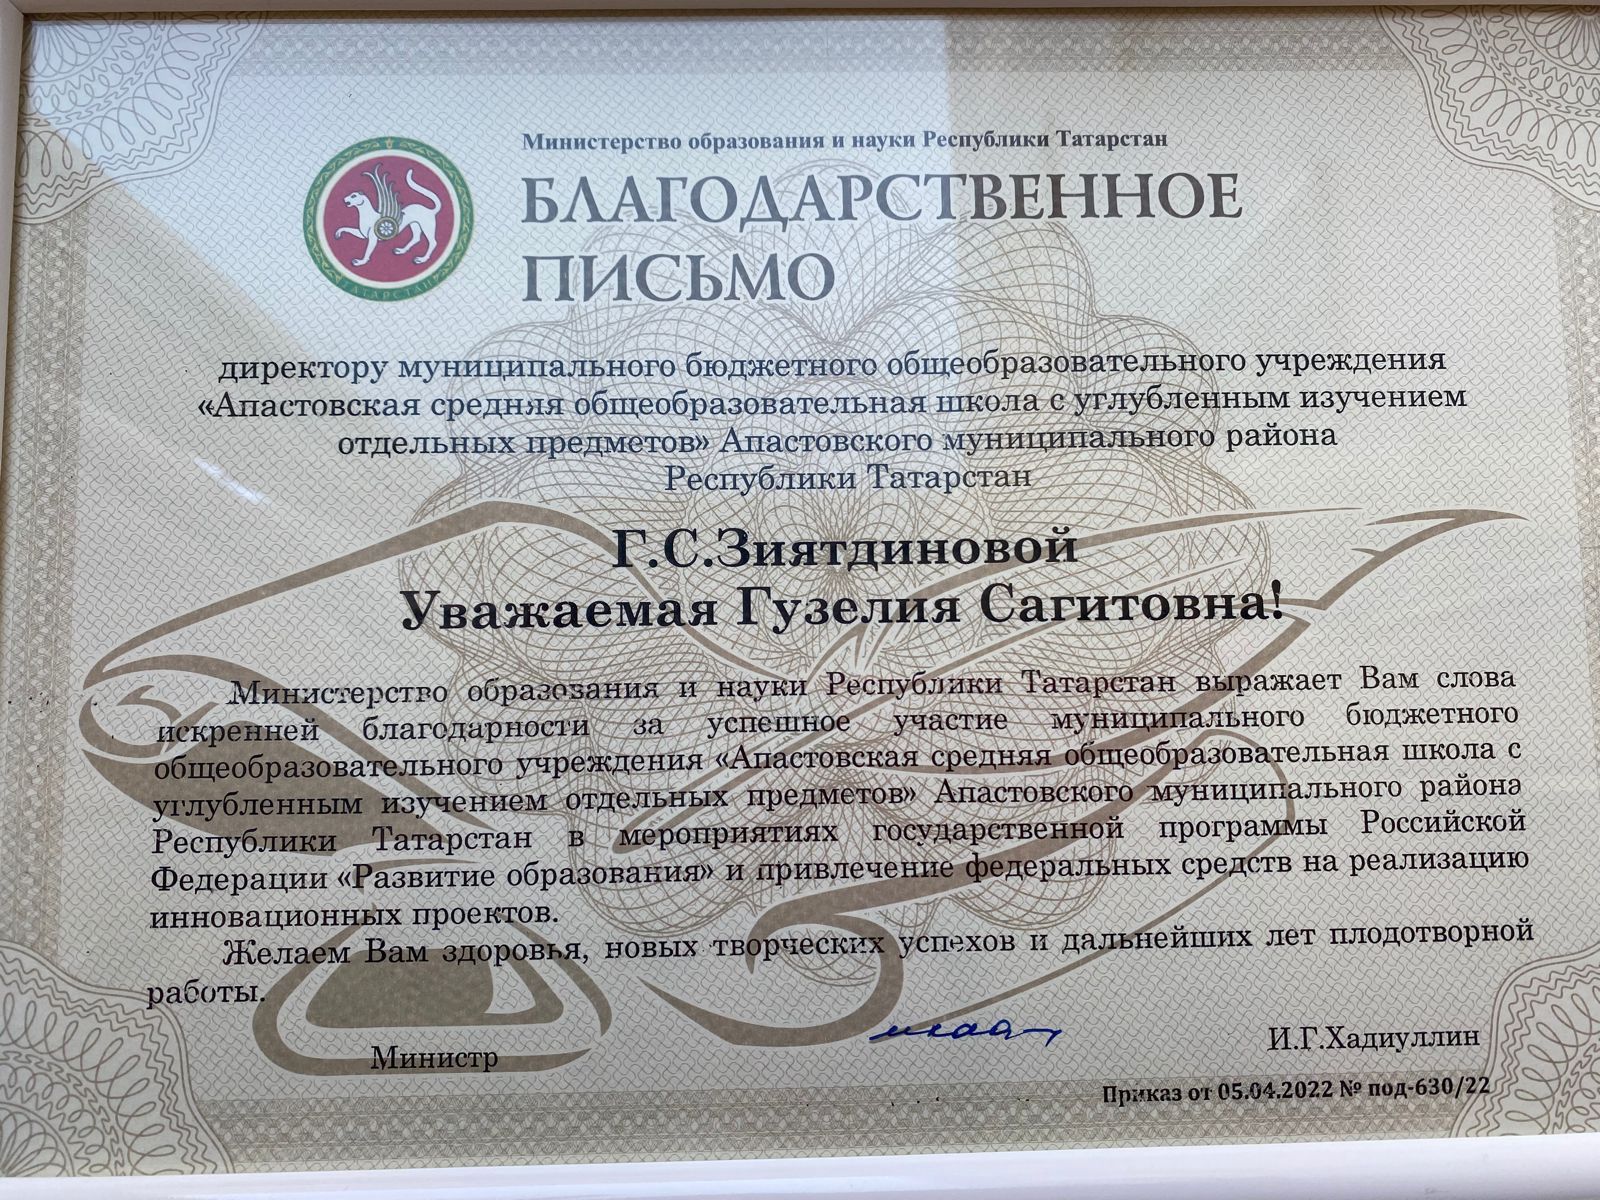 Наши приняли участие в коллегии «Реализация национального проекта «Образование» и федеральных отраслевых программ в Республике Татарстан